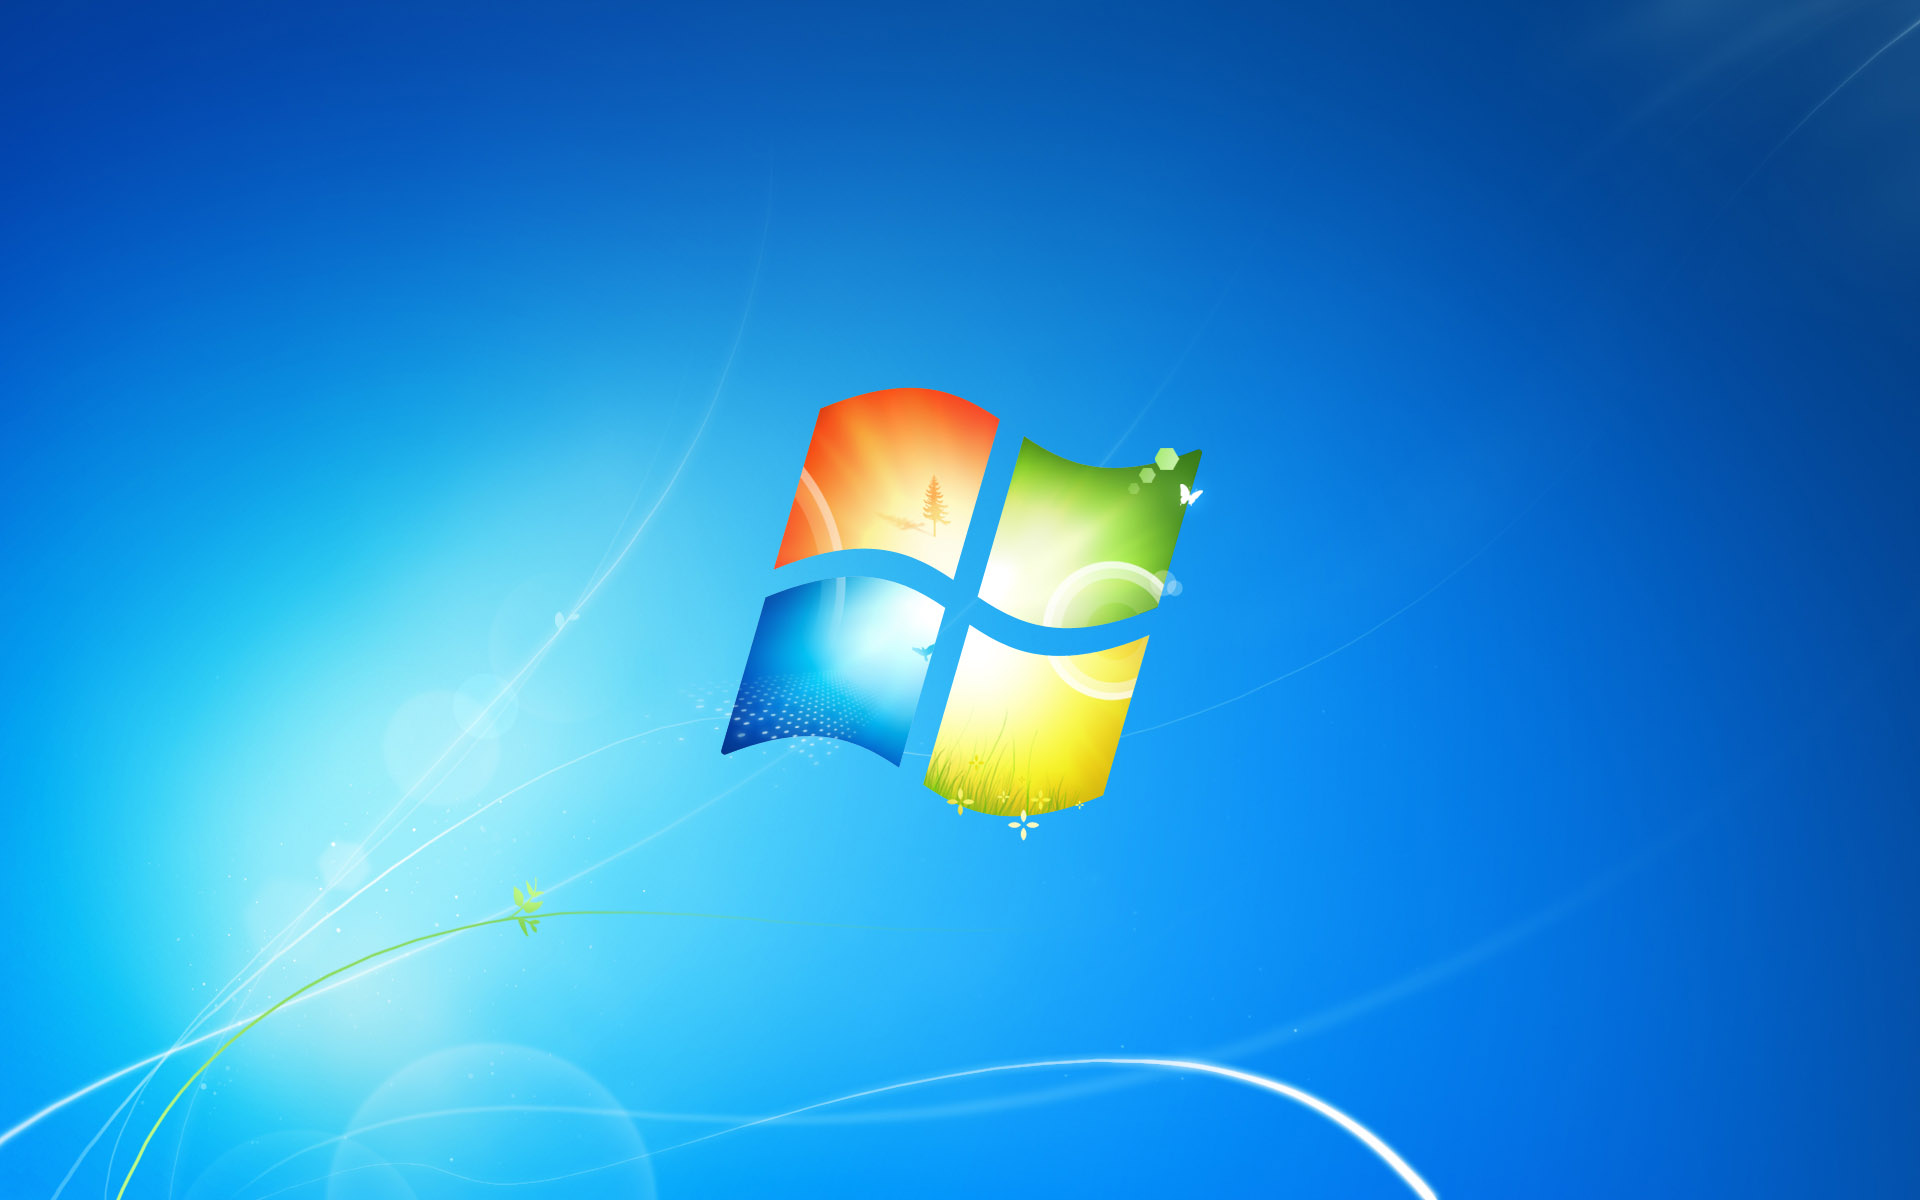 Windows+7+Wallpapers+19.jpg